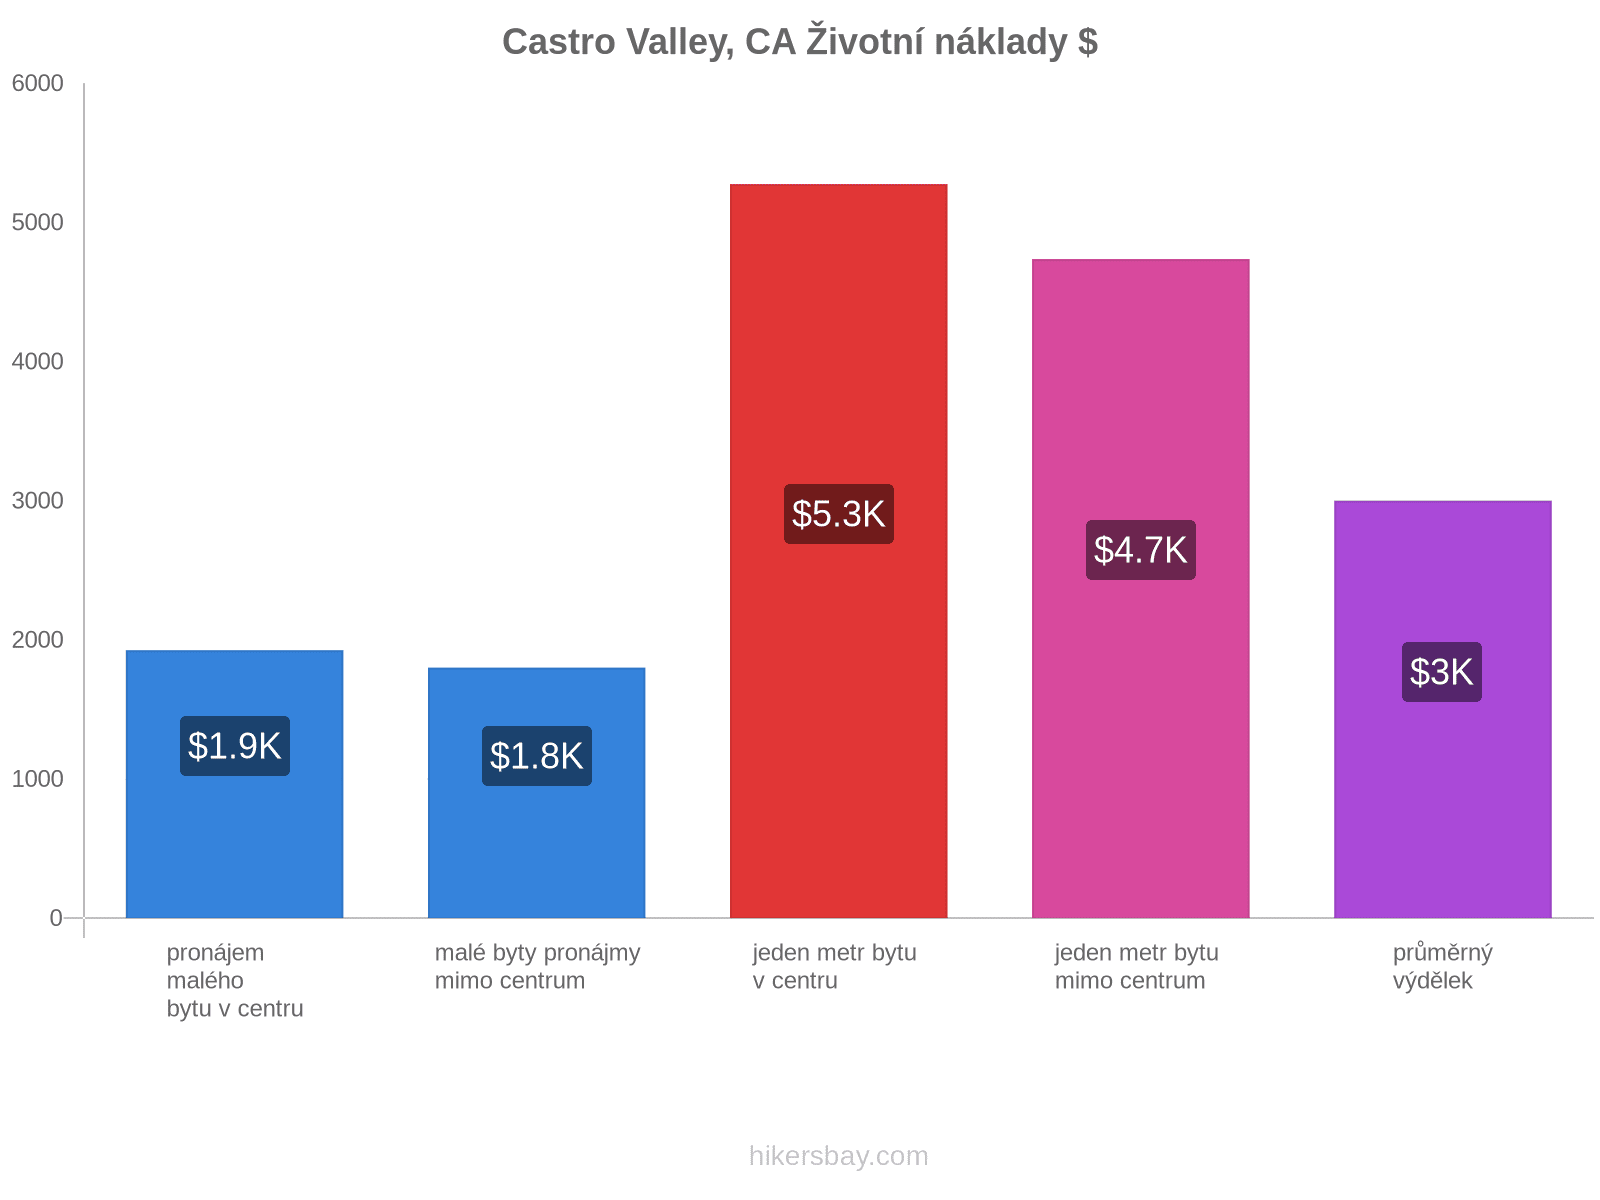 Castro Valley, CA životní náklady hikersbay.com